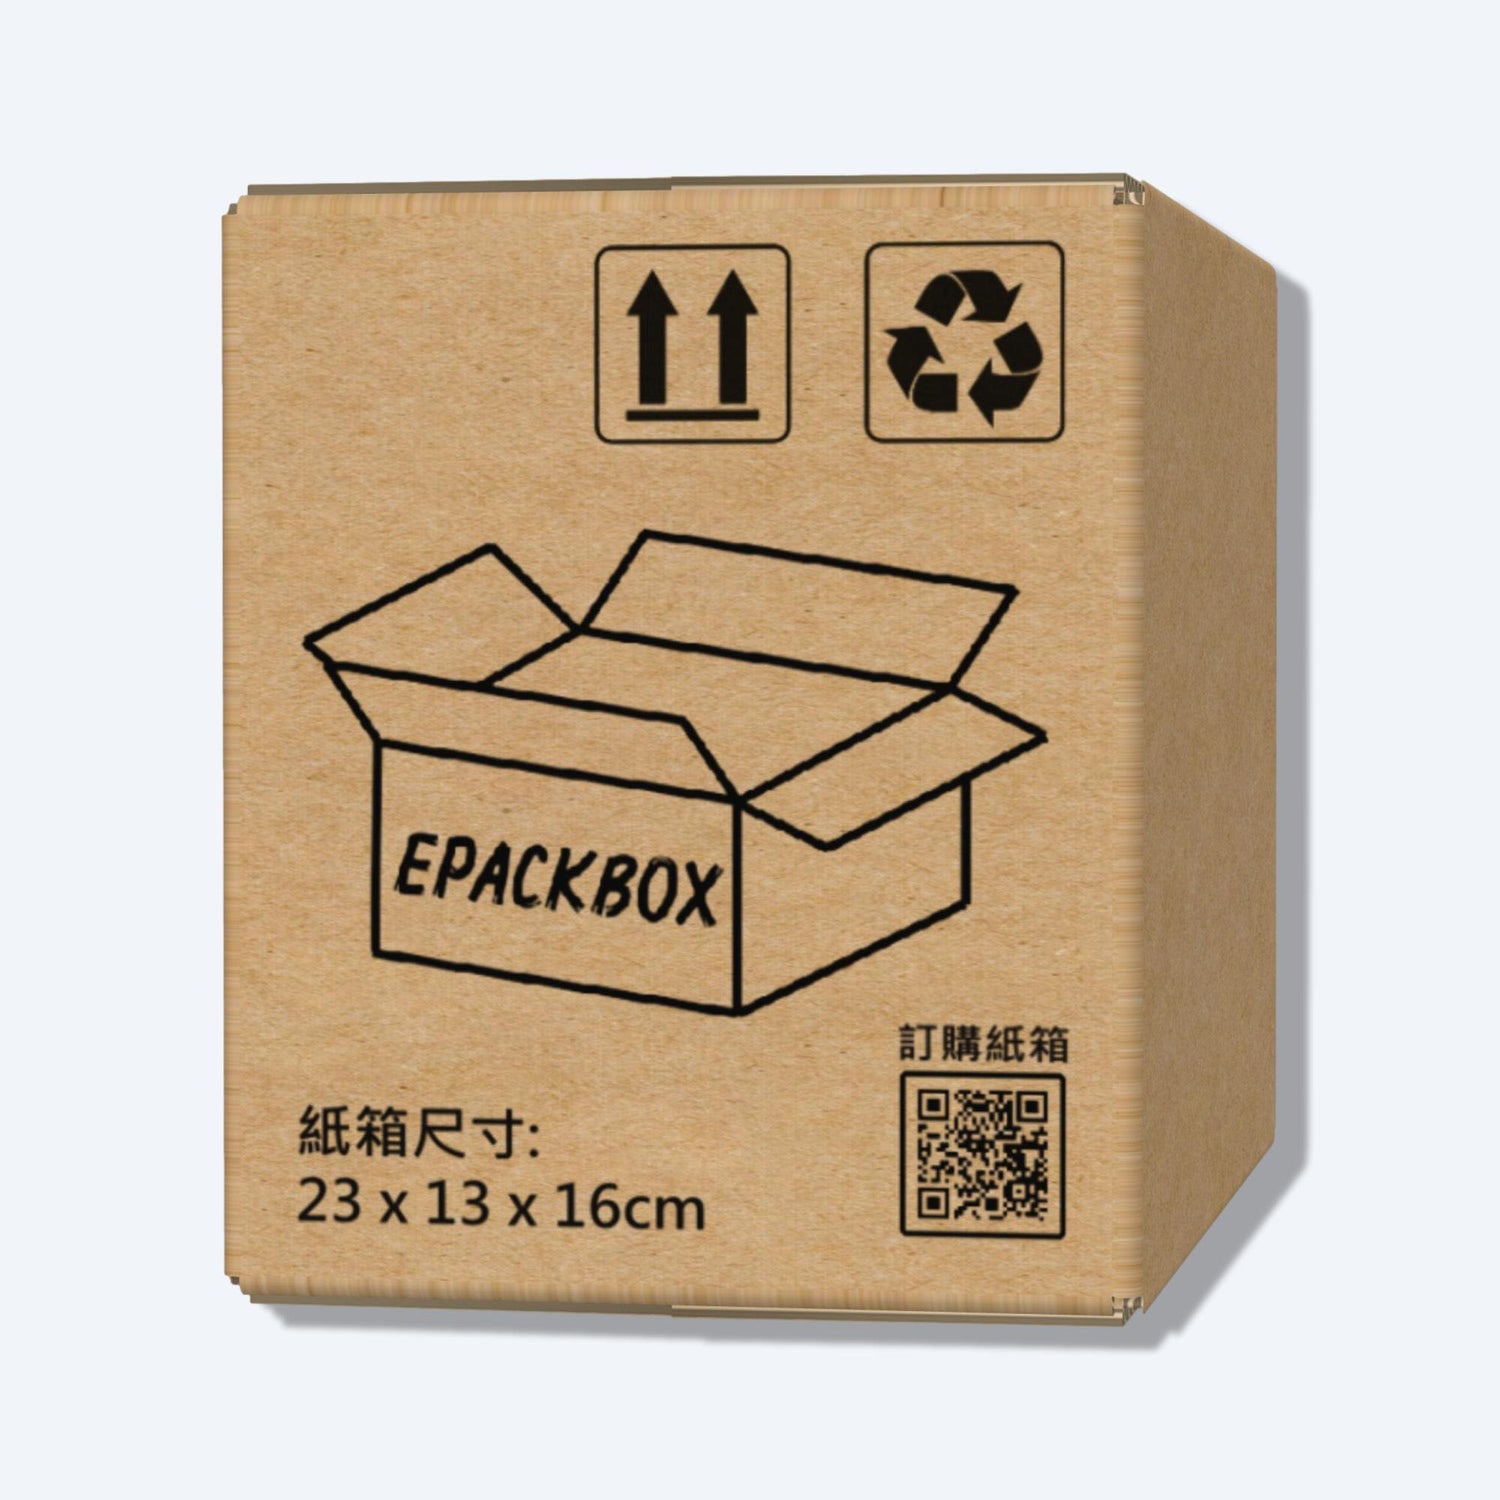 順豐P7尺寸紙箱展開圖，其尺寸符合順豐速運的包裝標準，展示折疊和組裝方式。